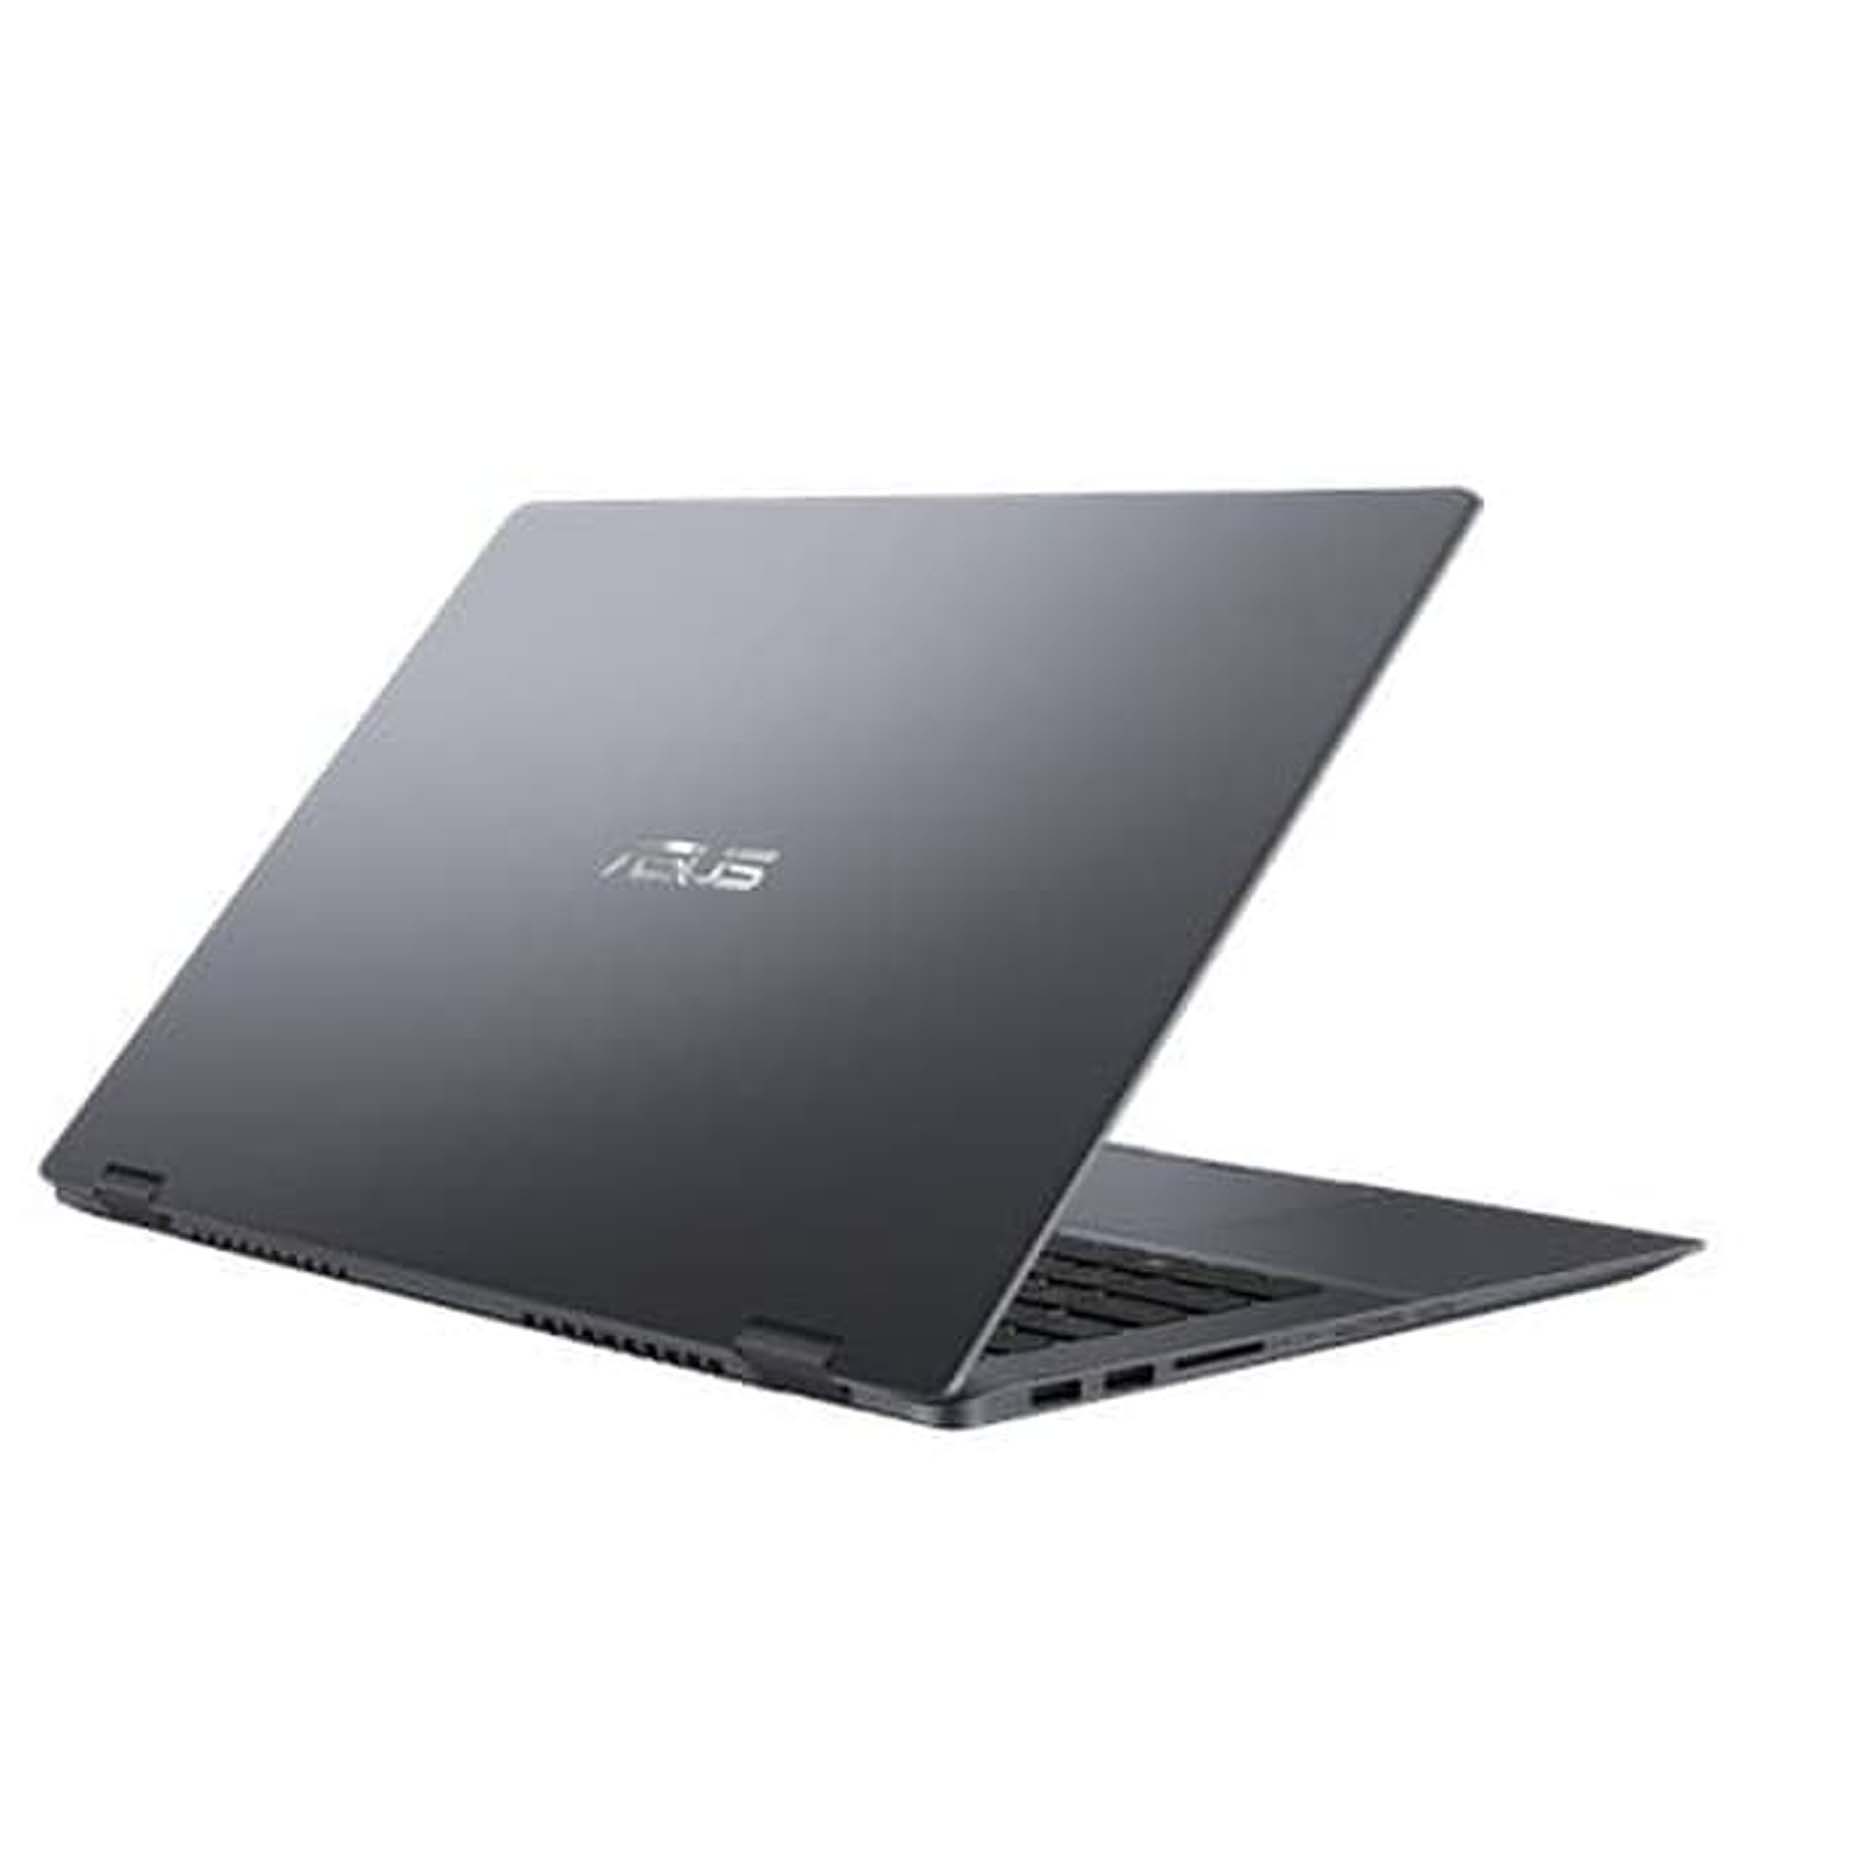 Harga Asus VivoBook Flip 14 TP412UA-EC501T Intel Core i5-8250U